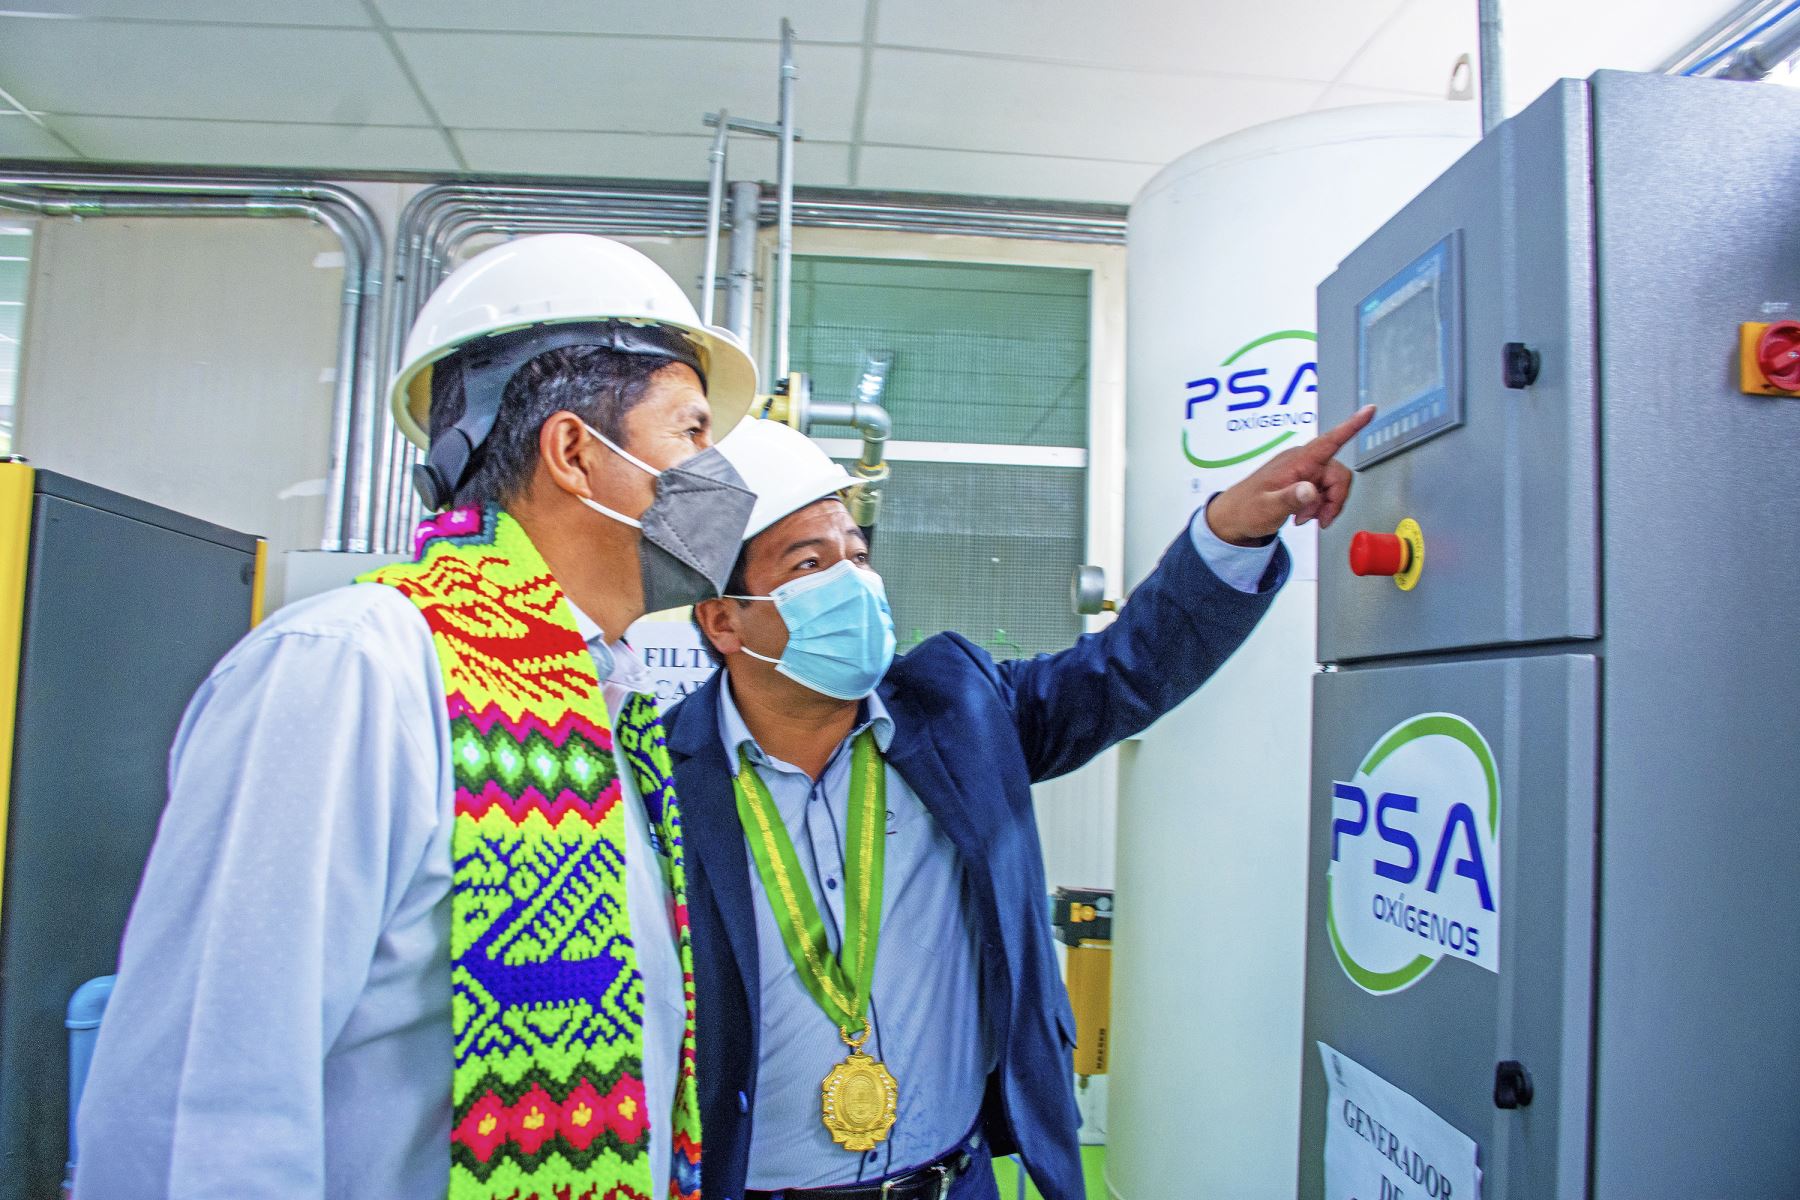 El presidente Pedro Castillo inauguró segunda planta de oxígeno en Huanta región Ayacucho. Foto: ANDINA/Presidencia